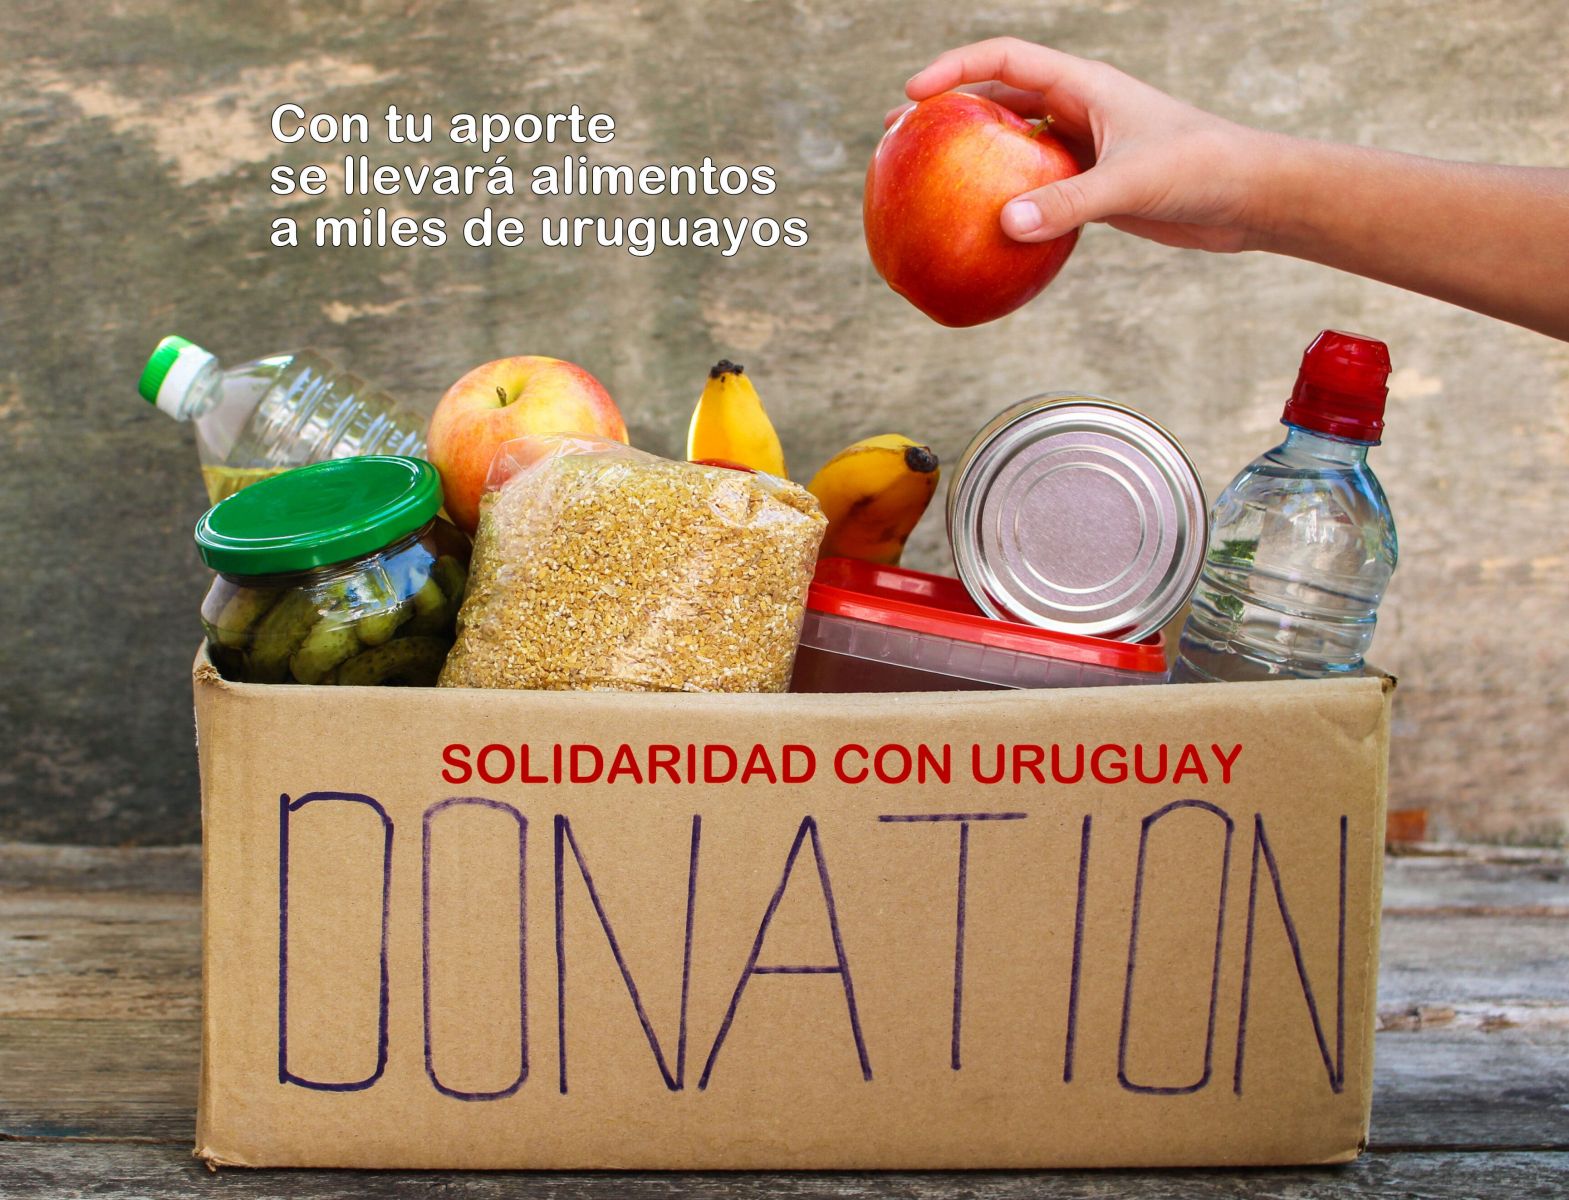 La alimentación de miles de uruguayos depende de tu aporte SOLIDARIO 